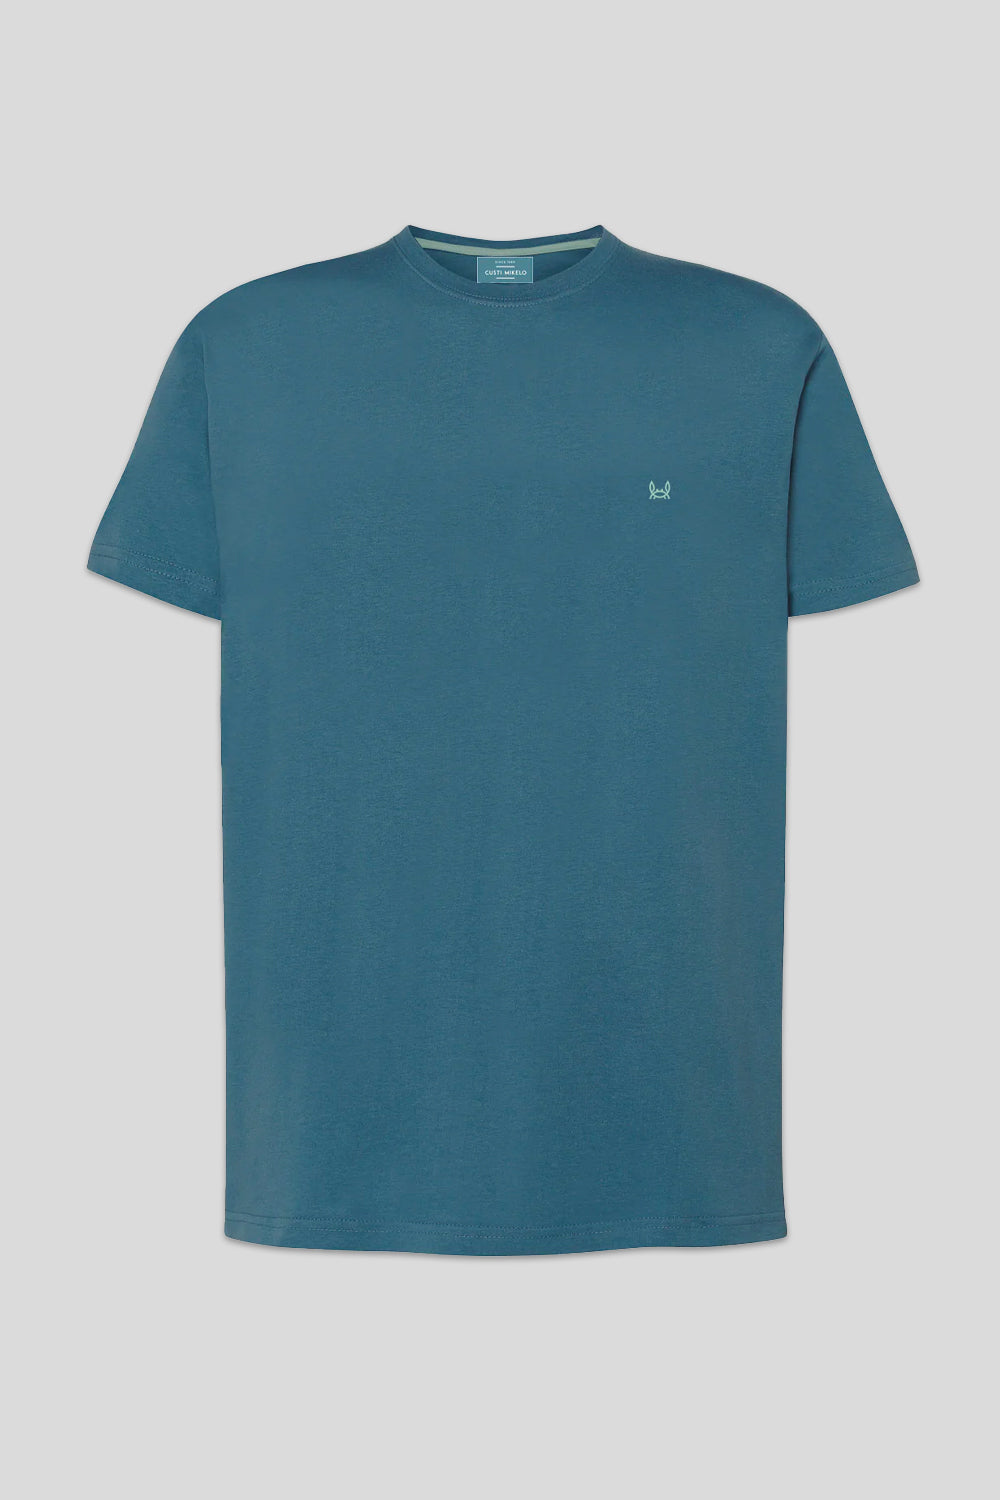 Camiseta básica verde azulado